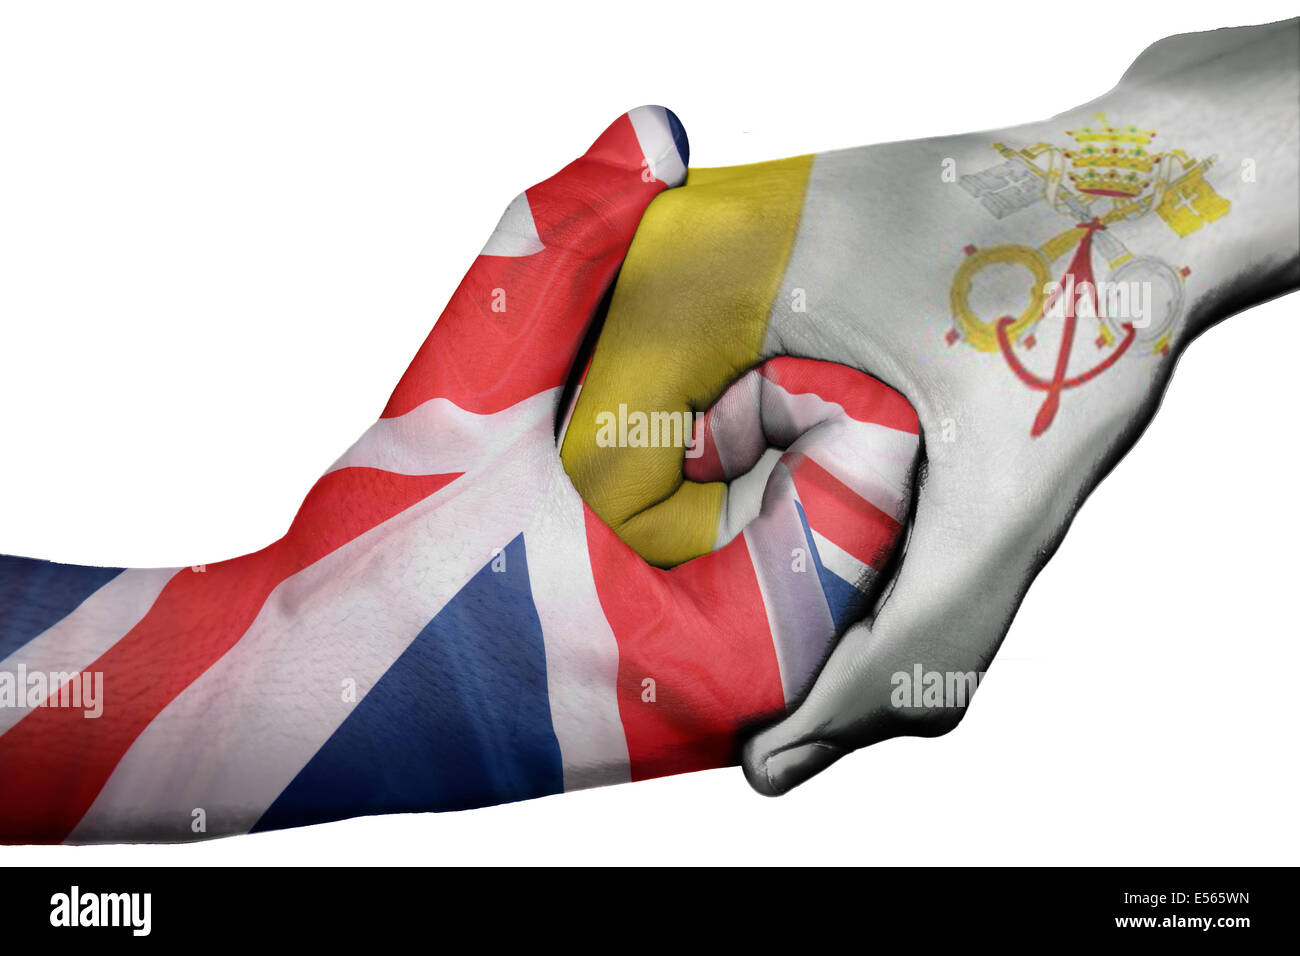 Handshake diplomatiche tra paesi: bandiere del Regno Unito e la Città del Vaticano sovradipinta le due mani Foto Stock